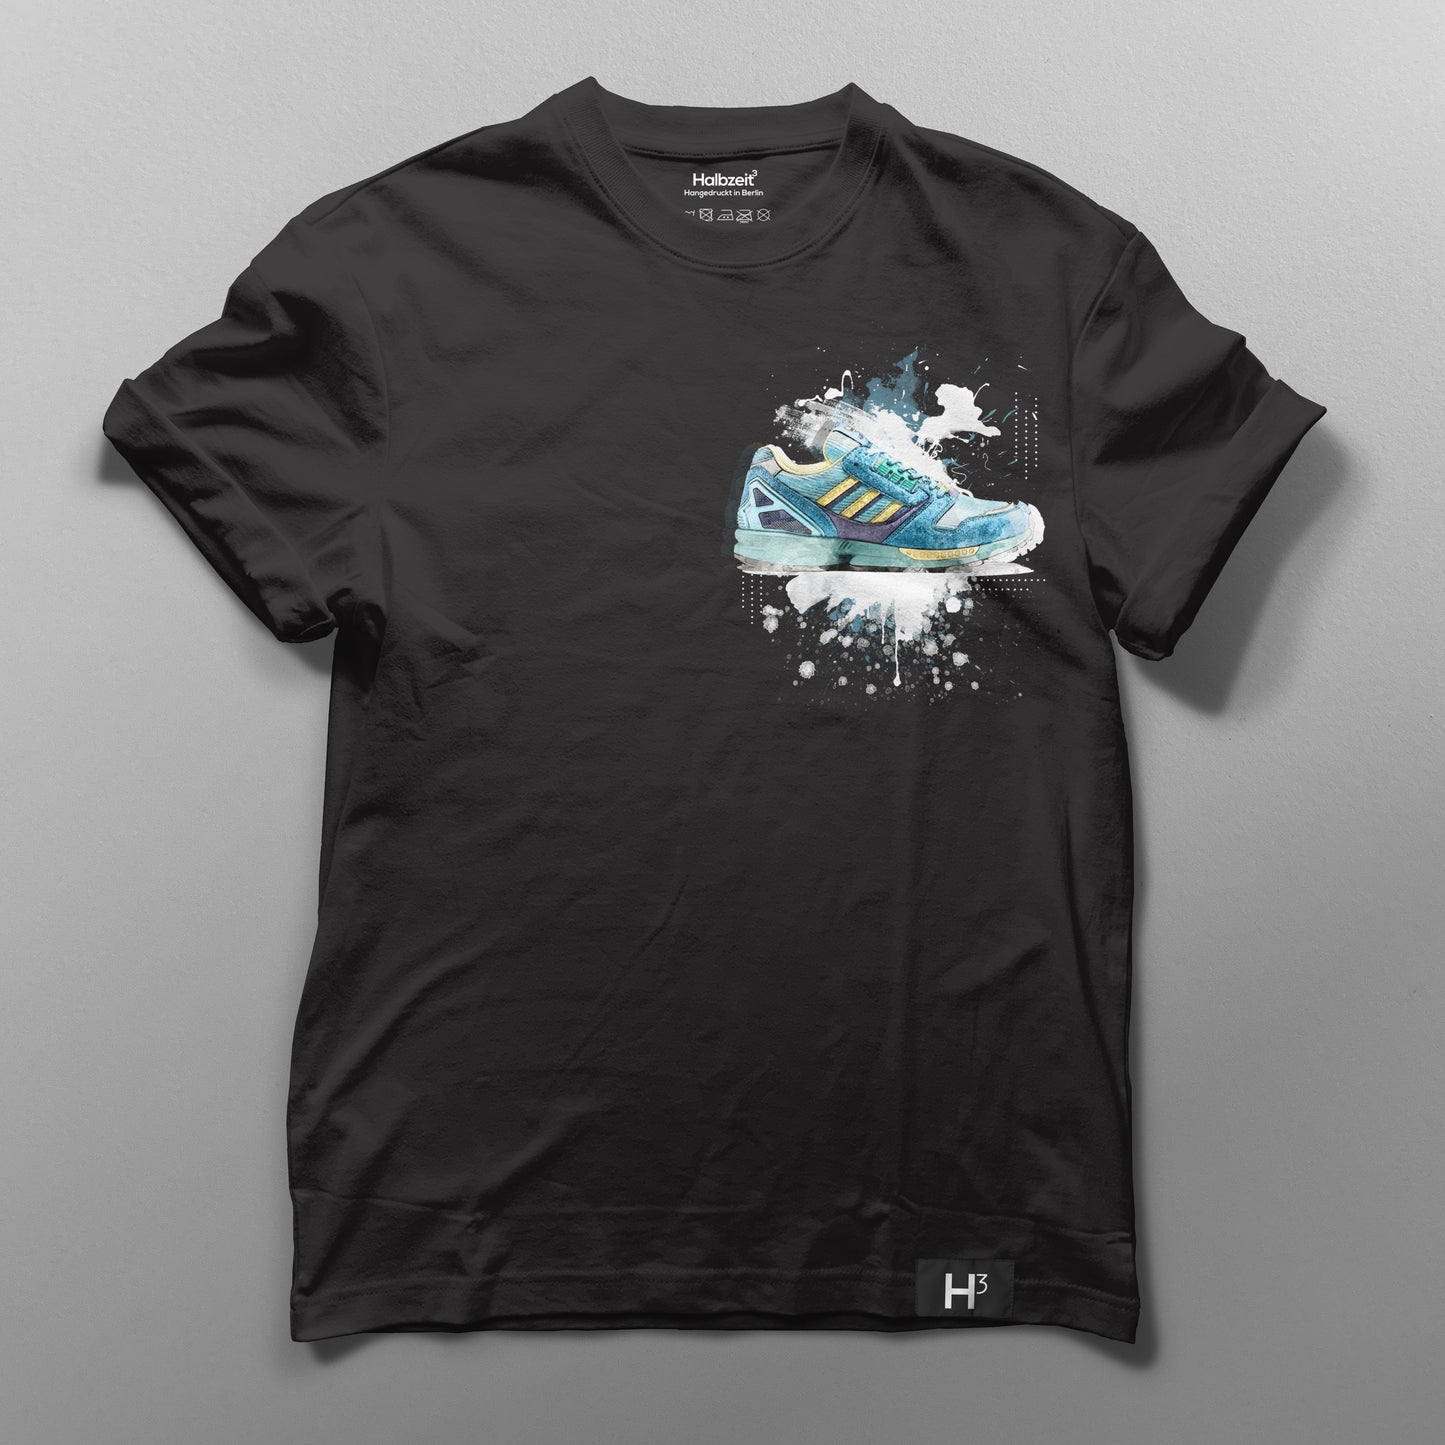 T-Shirt "Aqua 2019" black - Small